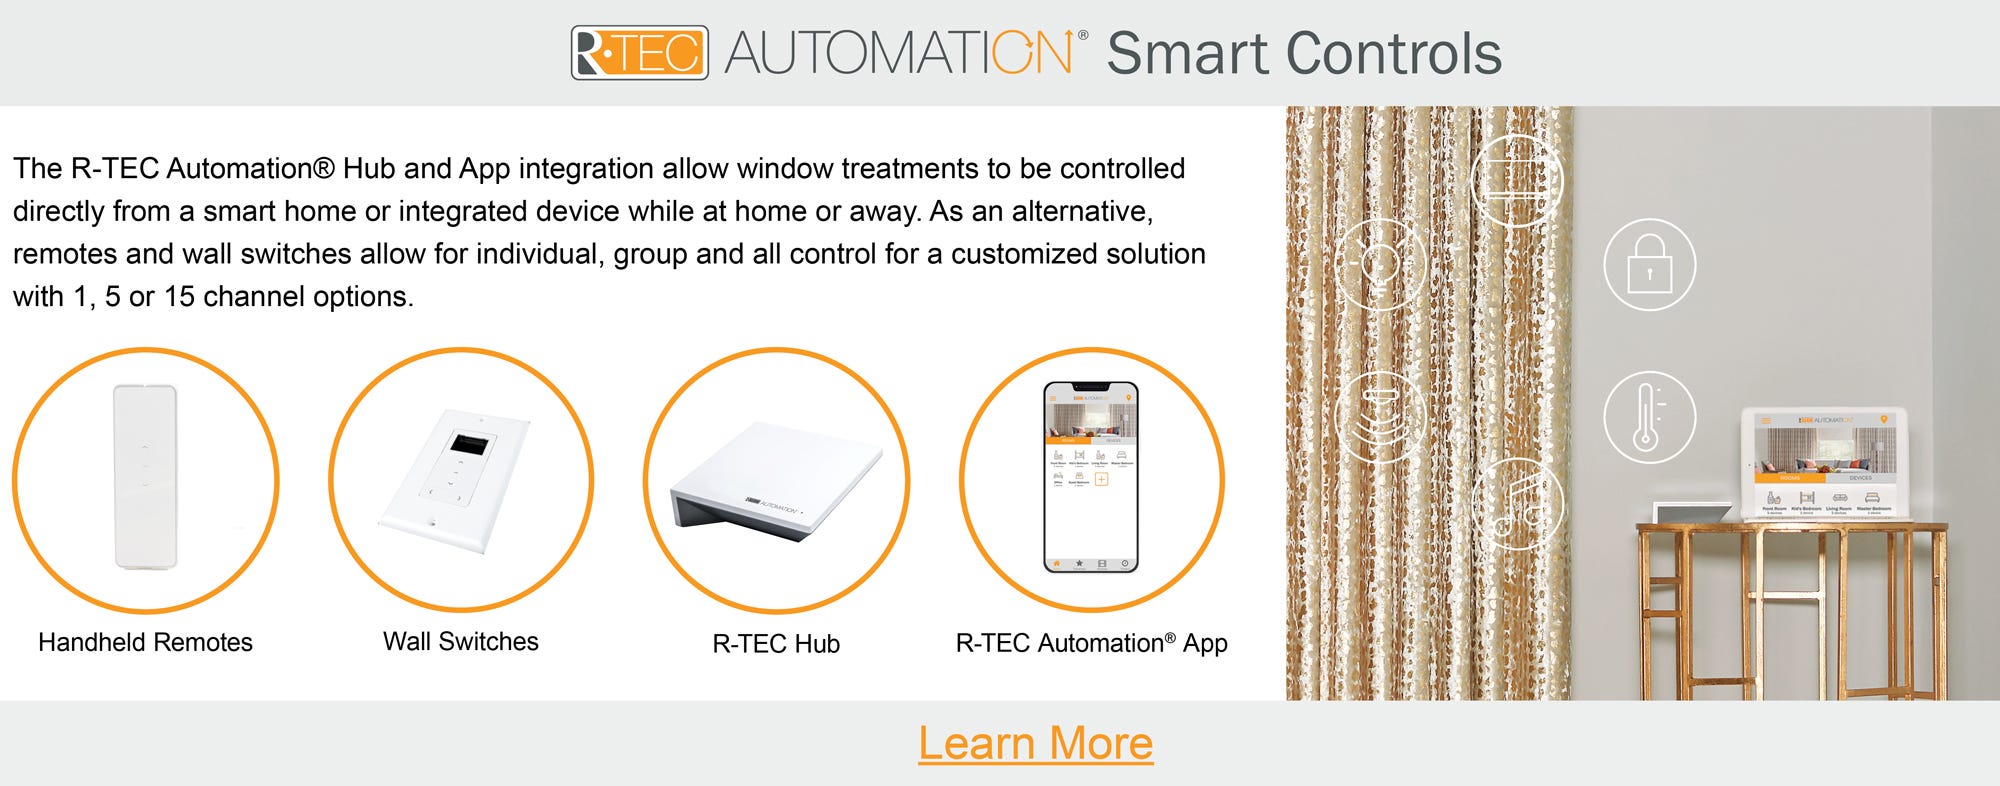 R-TEC Smart Controls